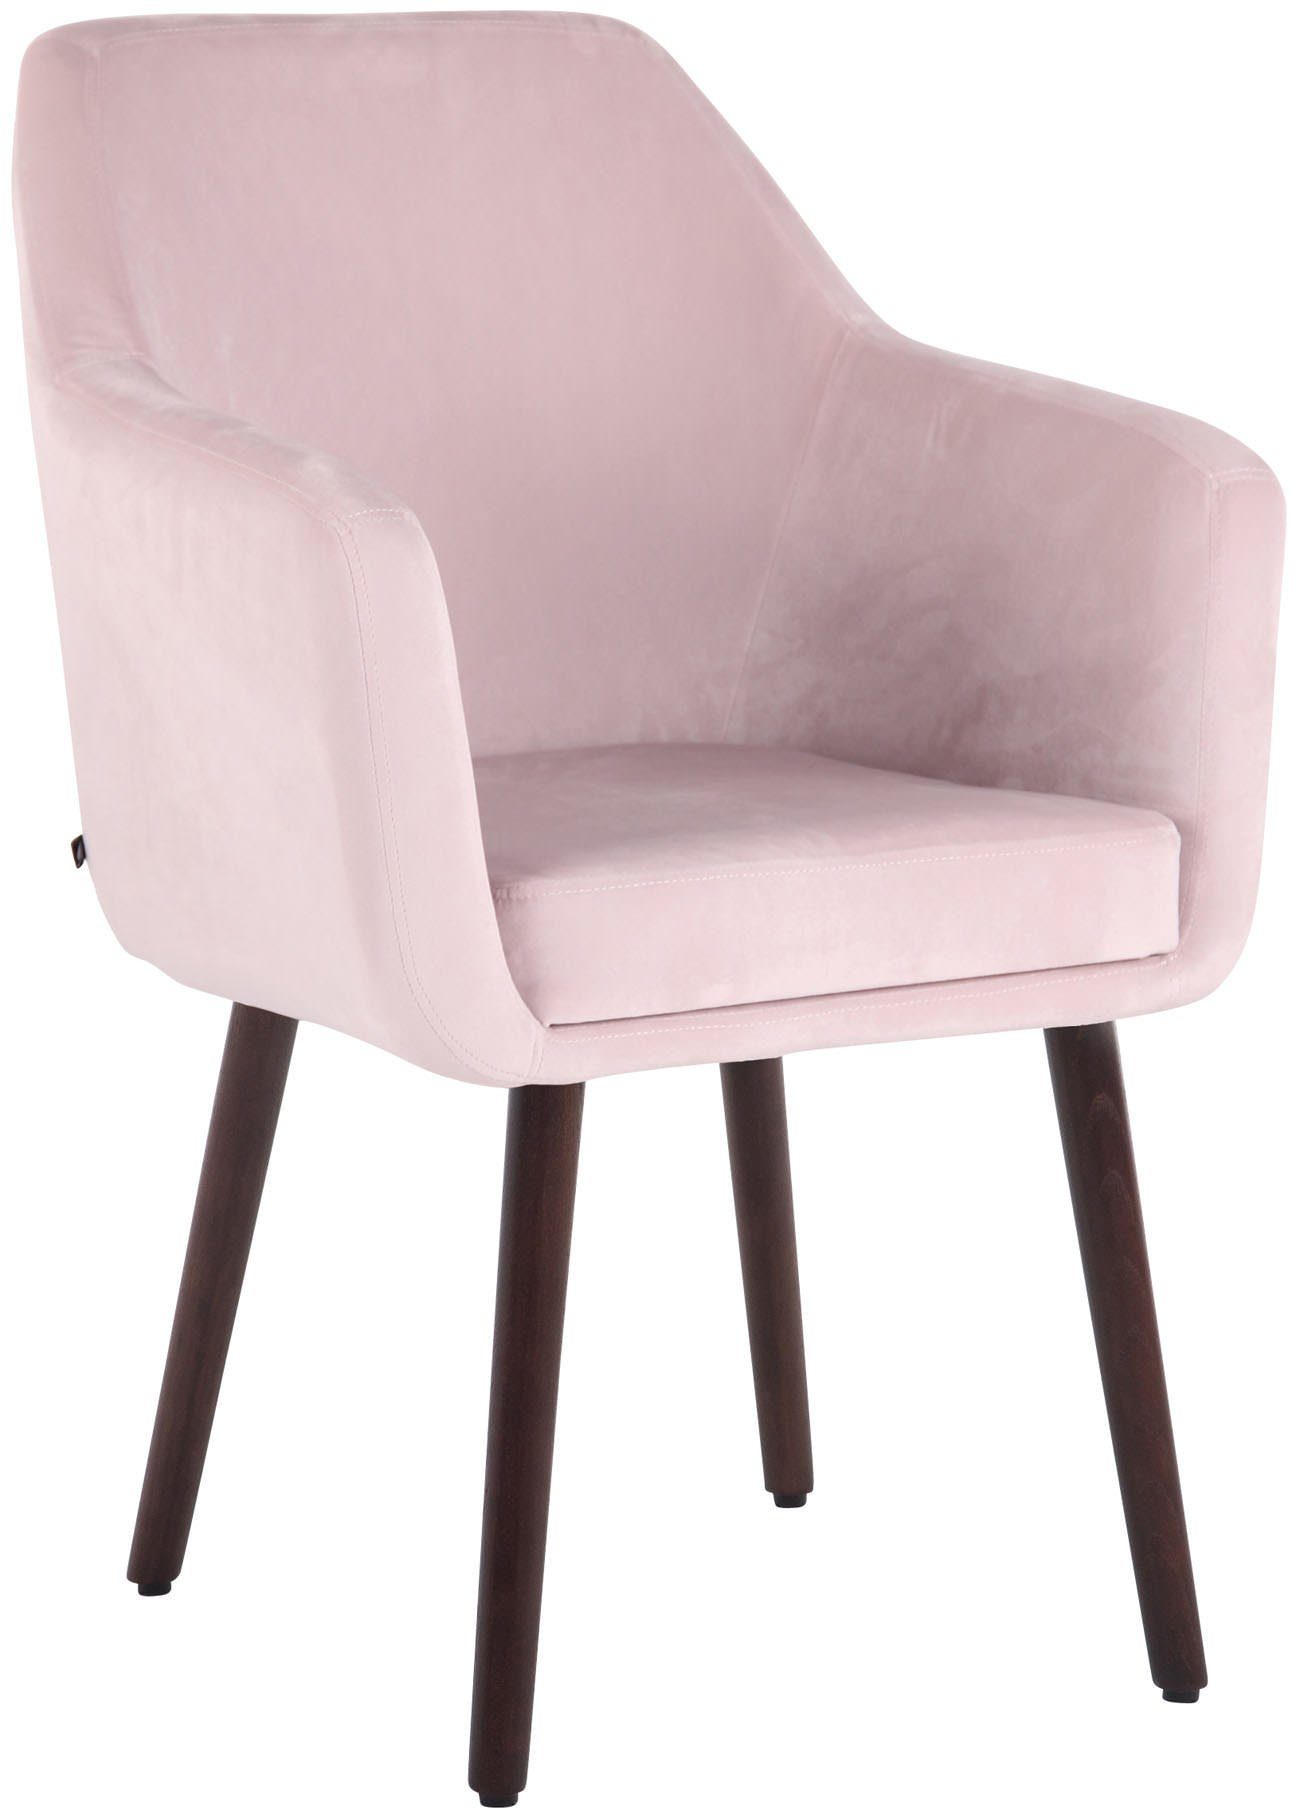 TPFLiving Esszimmerstuhl Utah mit hochwertig gepolsterter Sitzfläche - Konferenzstuhl (Küchenstuhl - Esstischstuhl - Wohnzimmerstuhl - Polsterstuhl), Gestell: Buchenholz Walnuss - Sitzfläche: Samt pink